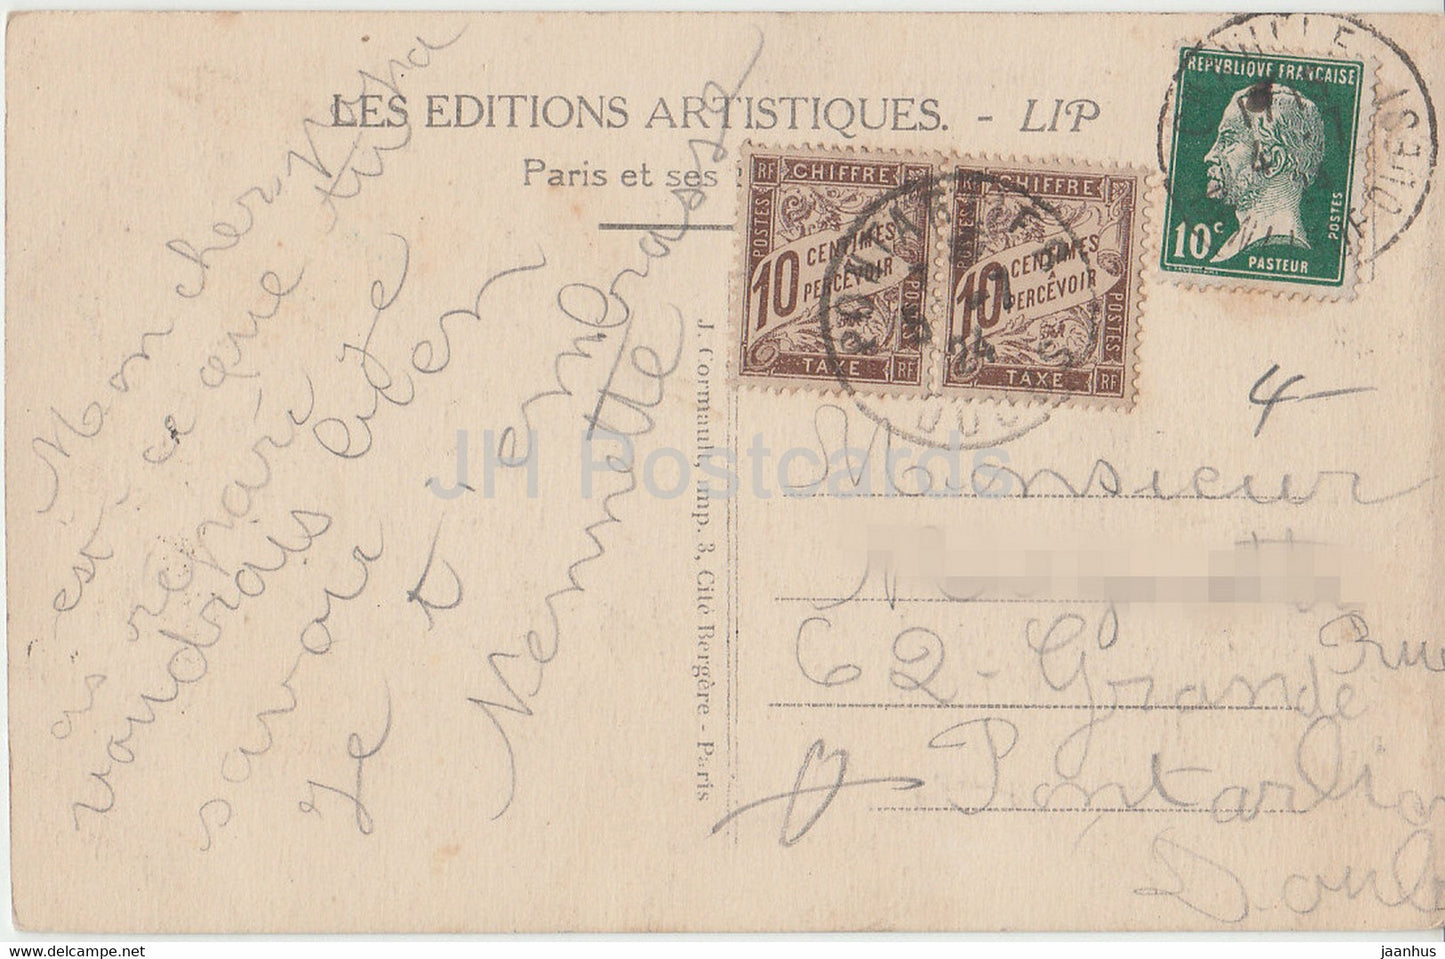 Paris – La Madeleine – Die Madeleine-Kirche – altes Auto – 19 – LIP – alte Postkarte – Frankreich – gebraucht